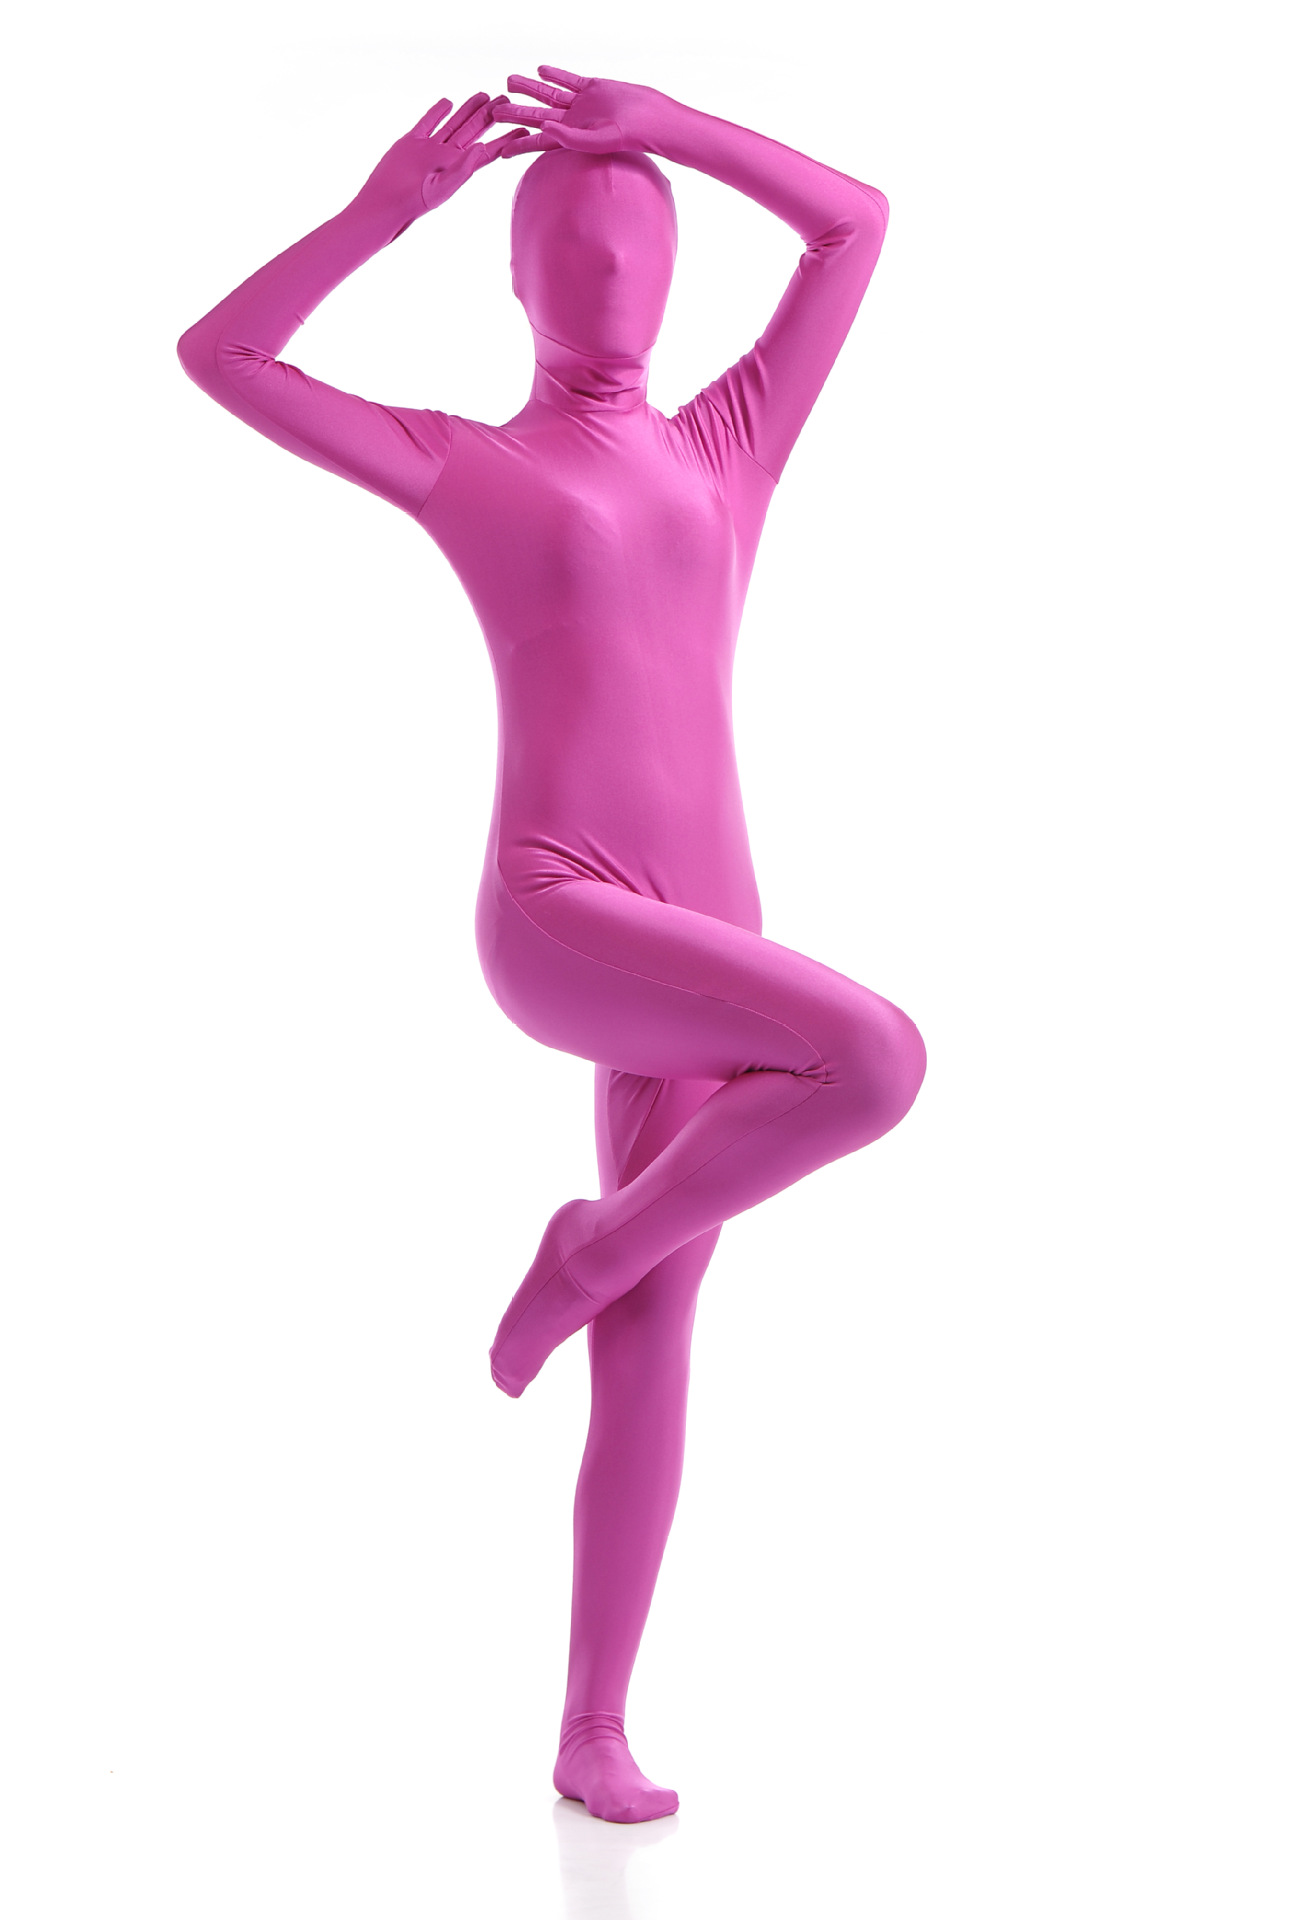 zentai全包紧身衣纯色变装体操服舞台演出服动漫服装连体衣塑身衣